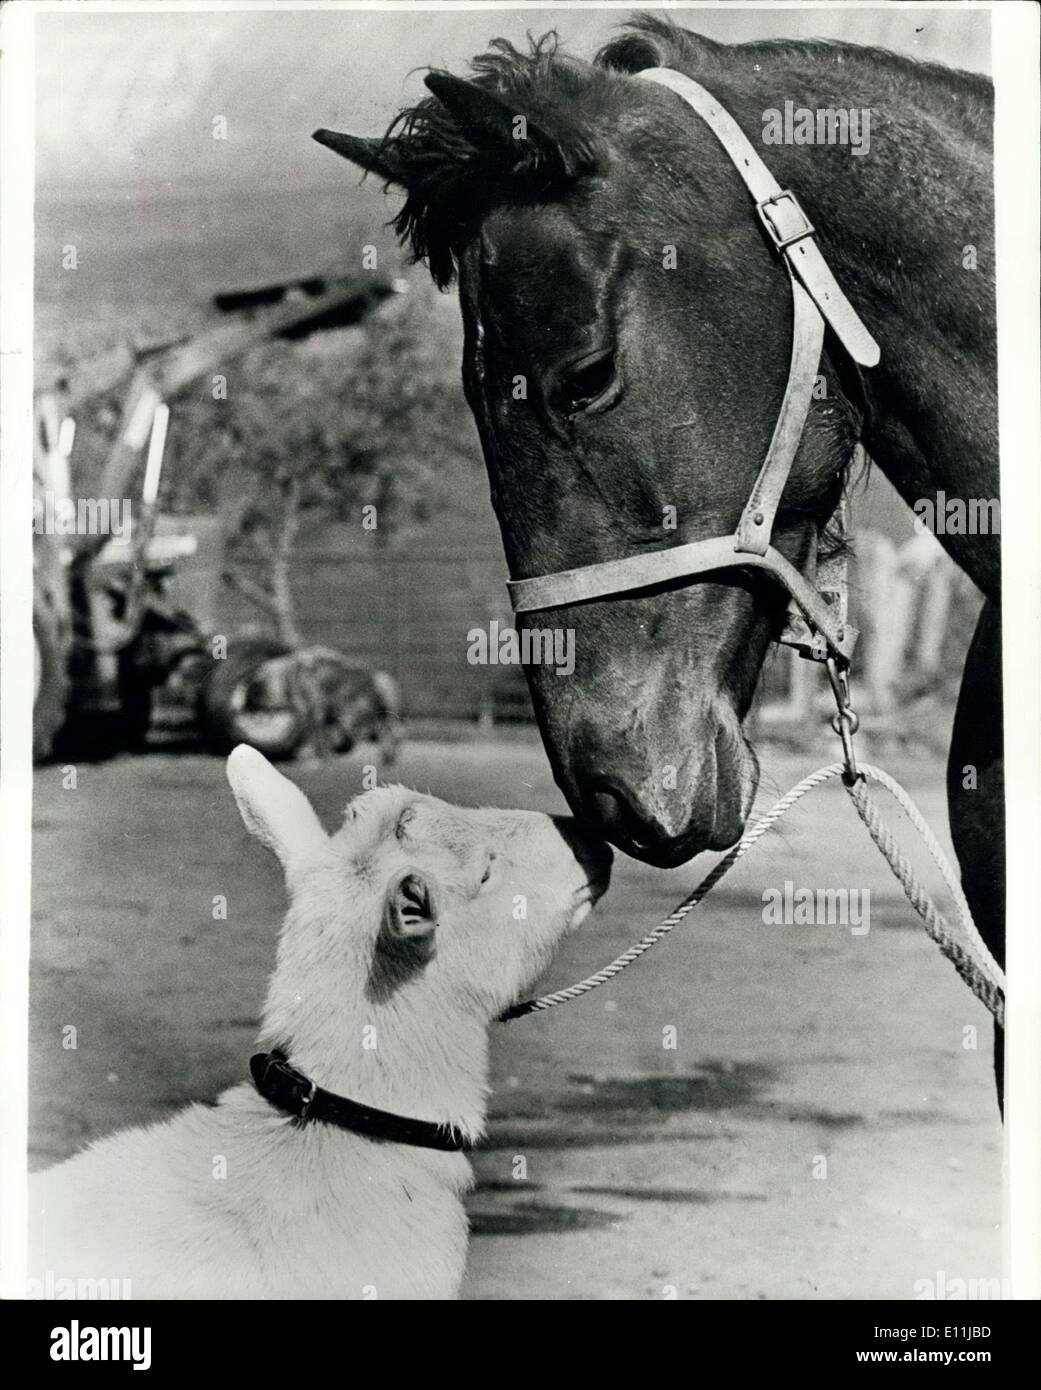 Abril 18, 1978 - Pals: caballo de carreras Charmed espíritu dosis no necesita una niñera. Así Rufus el billy goat se fuera de un trabajo. Durante los últimos dos años y medio ha sido Rufus en mano para mantener la calma del caballo antes de una gran carrera. Pero ahora Charmed espíritu está a punto de potro y que harán de su cabra amigo redundnat. Su dueño Leonard Fowell (24) de Chudleigh, Devon explicó: ''encantado espíritu utilizados para obtener tan nervioso ante un imposible viajar a la cumple. "Oh decidí poner Rufus en la caja con ella y trabajó la magia de inmediato. Ha sido el mismo desde Foto de stock